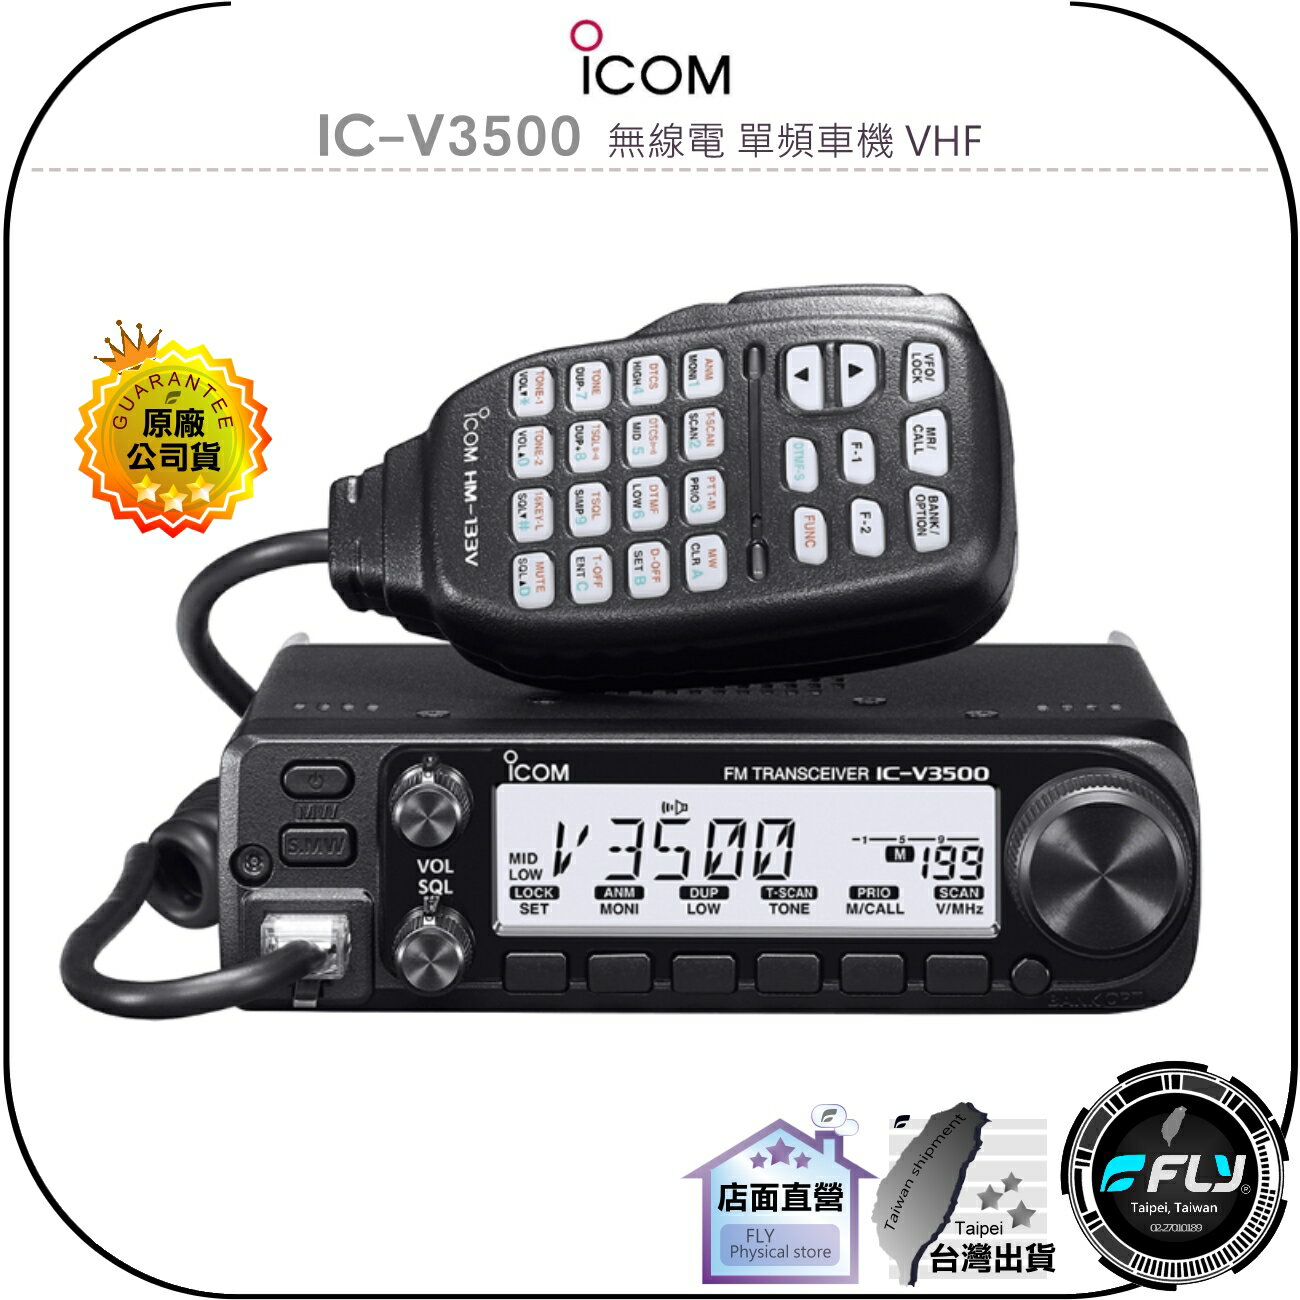 【飛翔商城】ICOM IC-V3500 無線電 單頻車機 VHF◉公司貨◉日本原裝進口◉65公里超長通話距離◉跟車聯繫